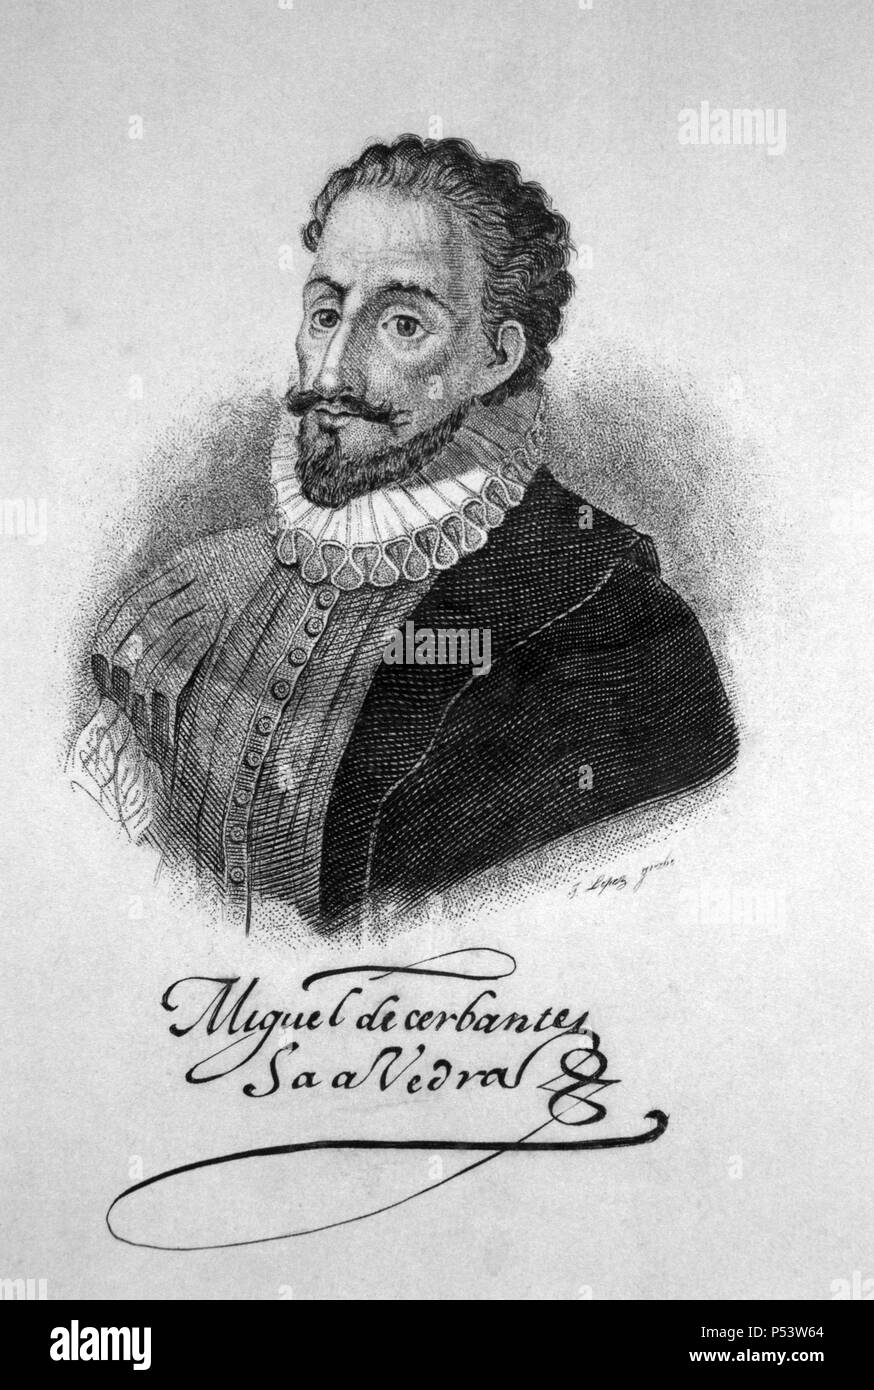 Miguel de Cervantes Saavedra (1547-1616), escritor y dramaturgo español. Stock Photo